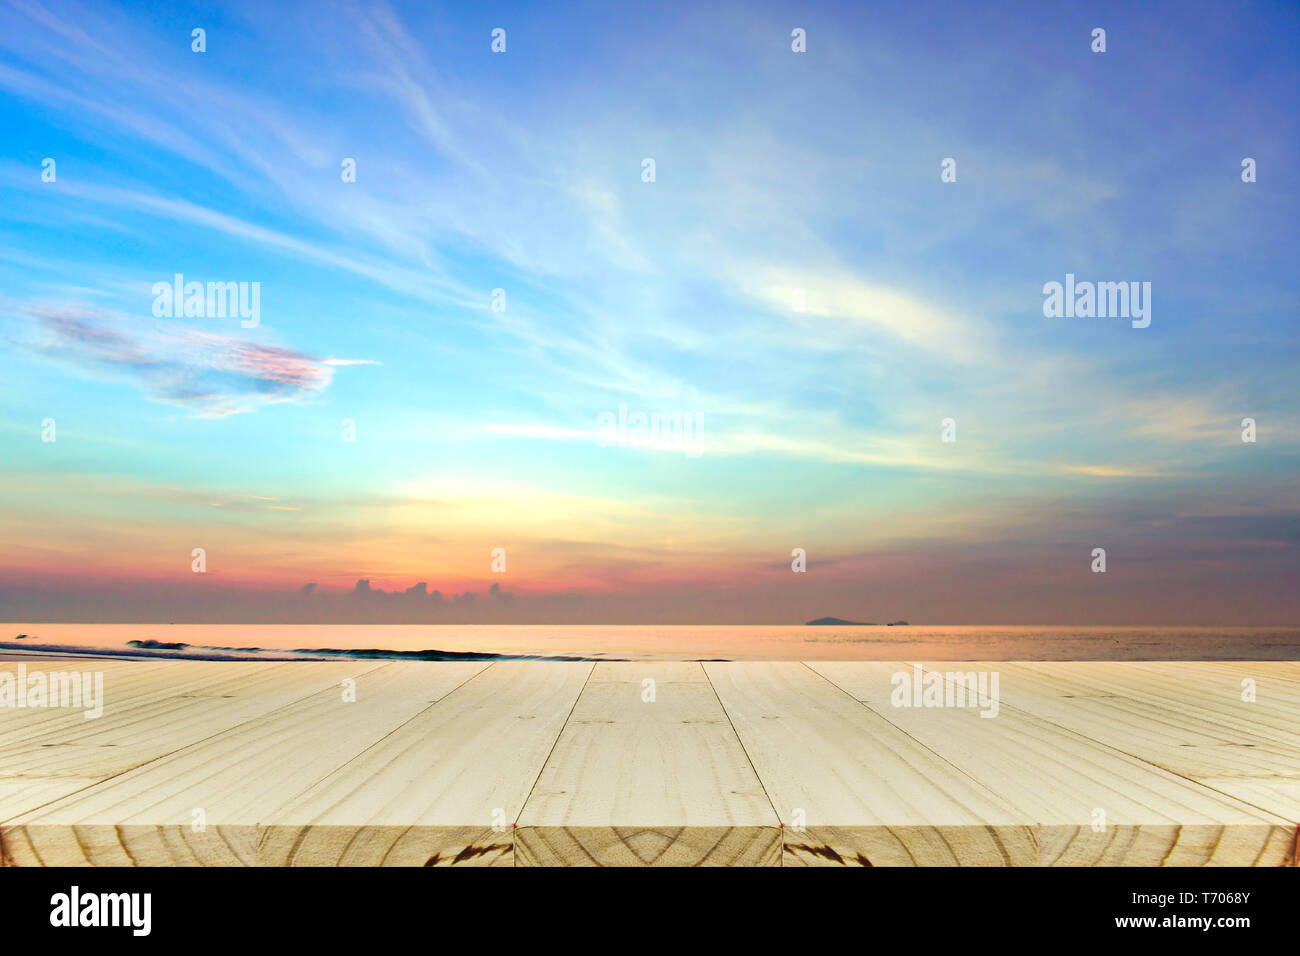 Holz Tisch wth sunrise Hintergrund, Morgenlicht, die natürliche Beleuchtung Phänomene. Stockfoto